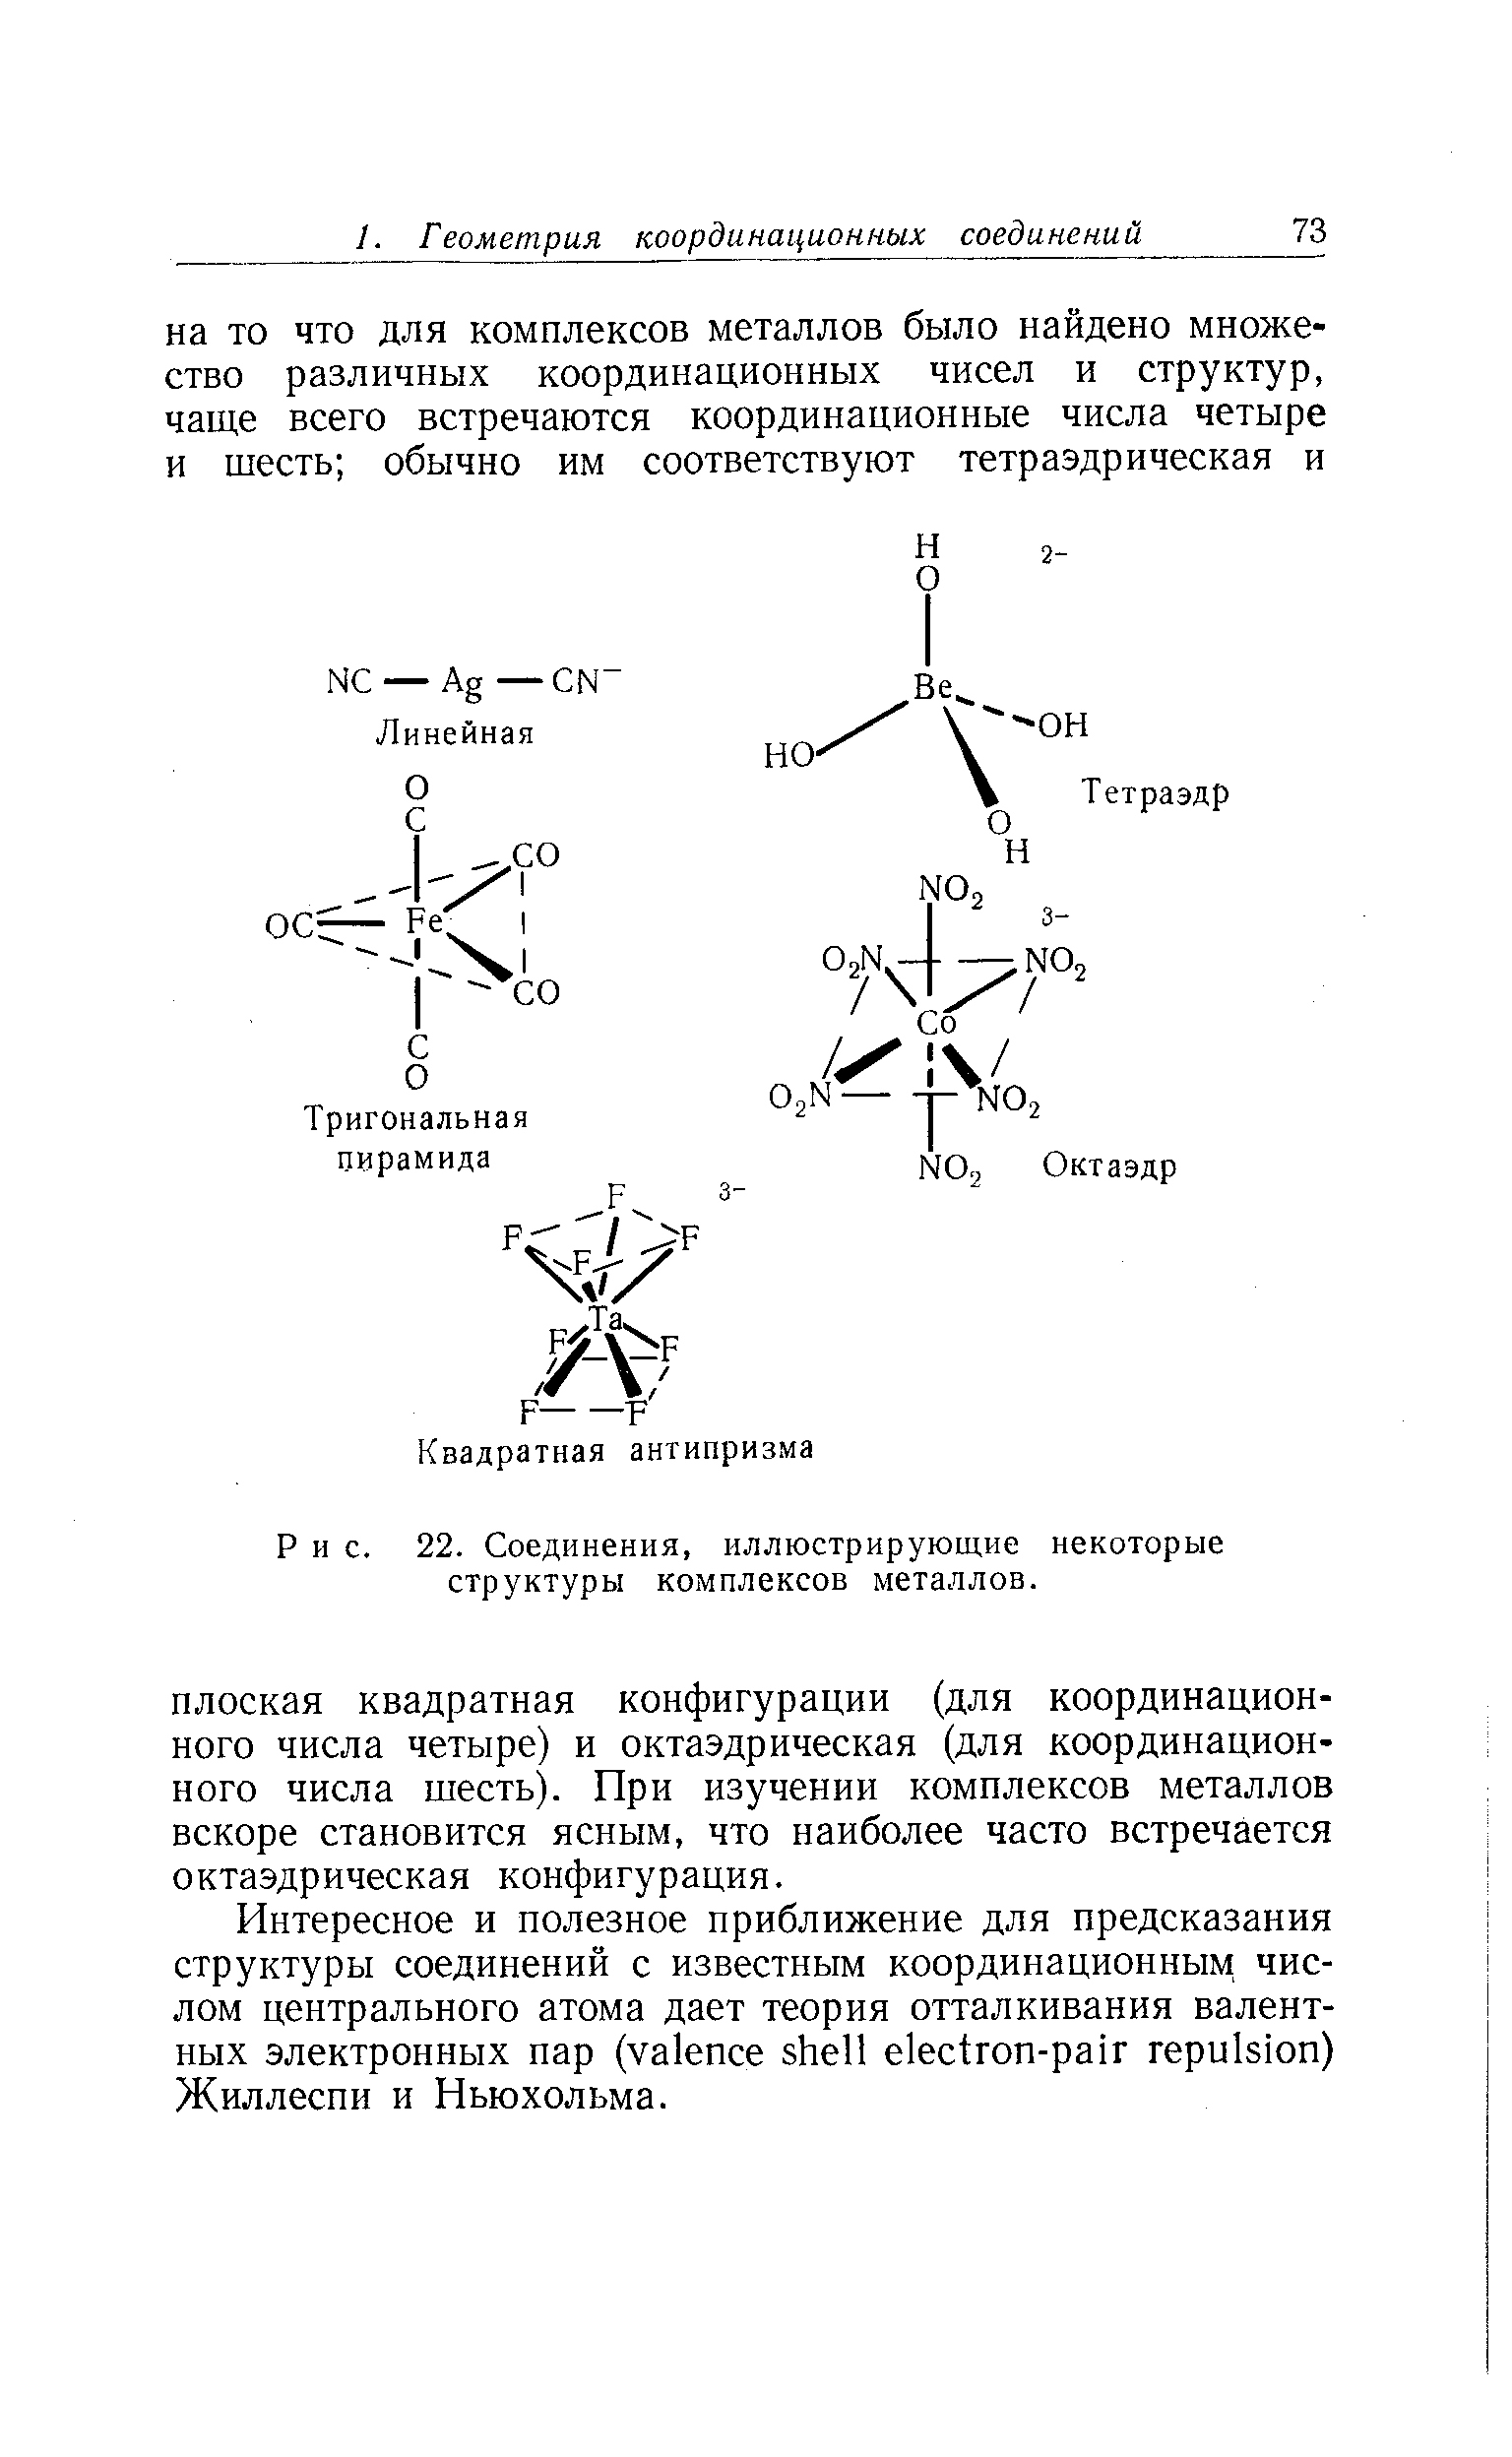 Соединения, иллюстрирующие некоторые структуры комплексов металлов.